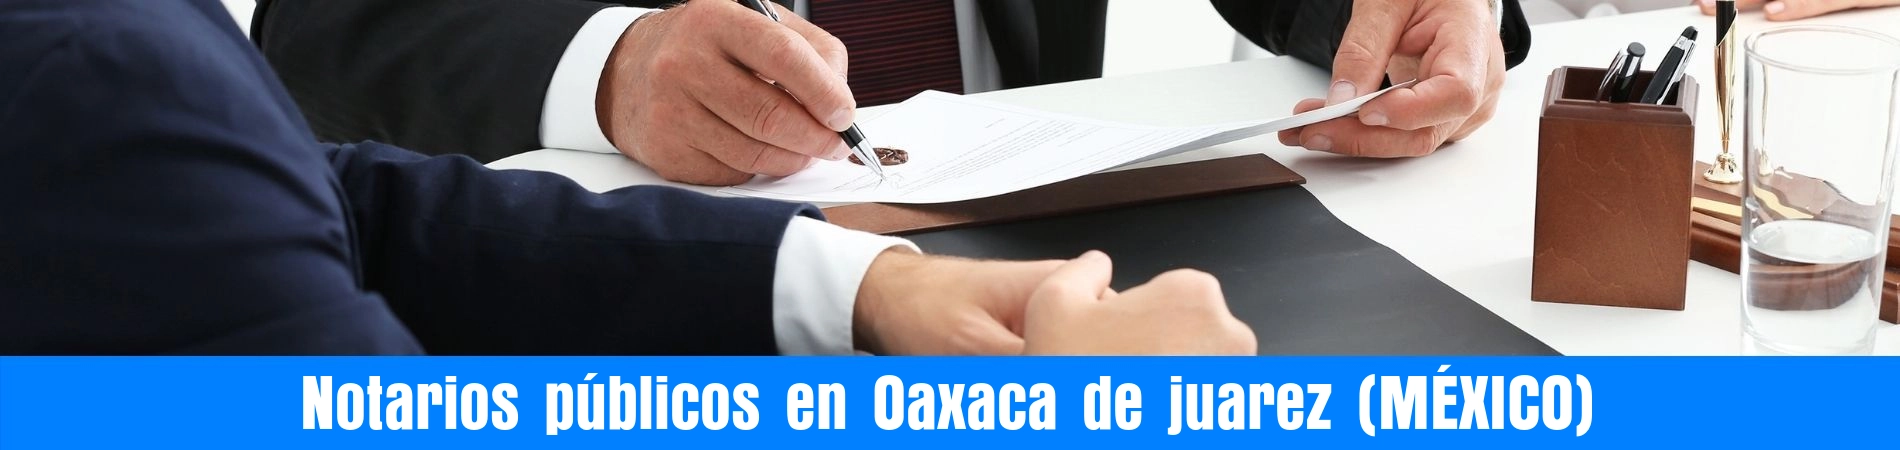 Notarios-públicos-en-Oaxaca-de-juarez-mexico